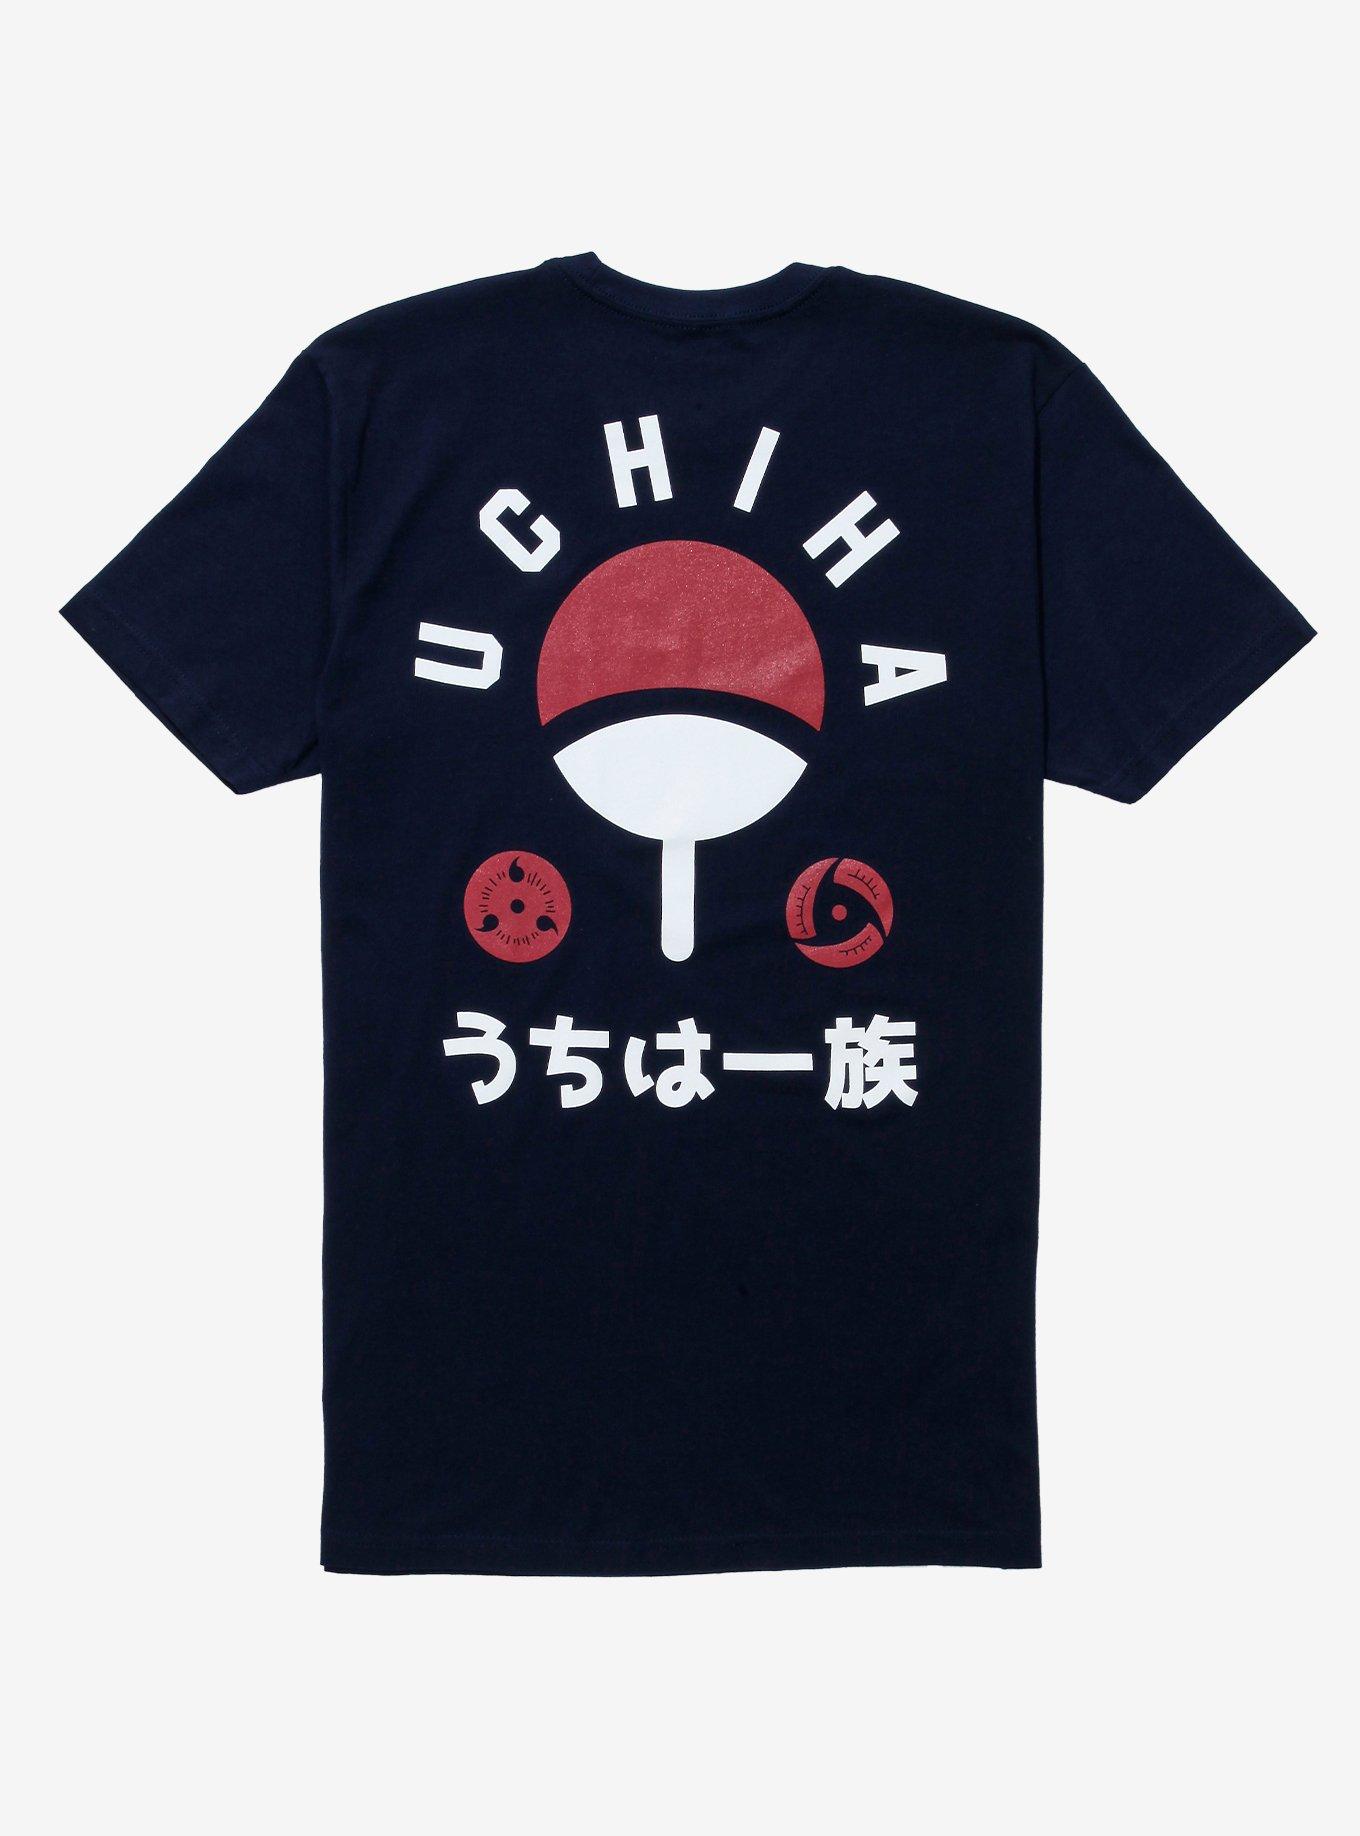 Naruto Shippuden Uchiha Clan T-Shirt - BoxLunch Exclusive, BLACK, hi-res